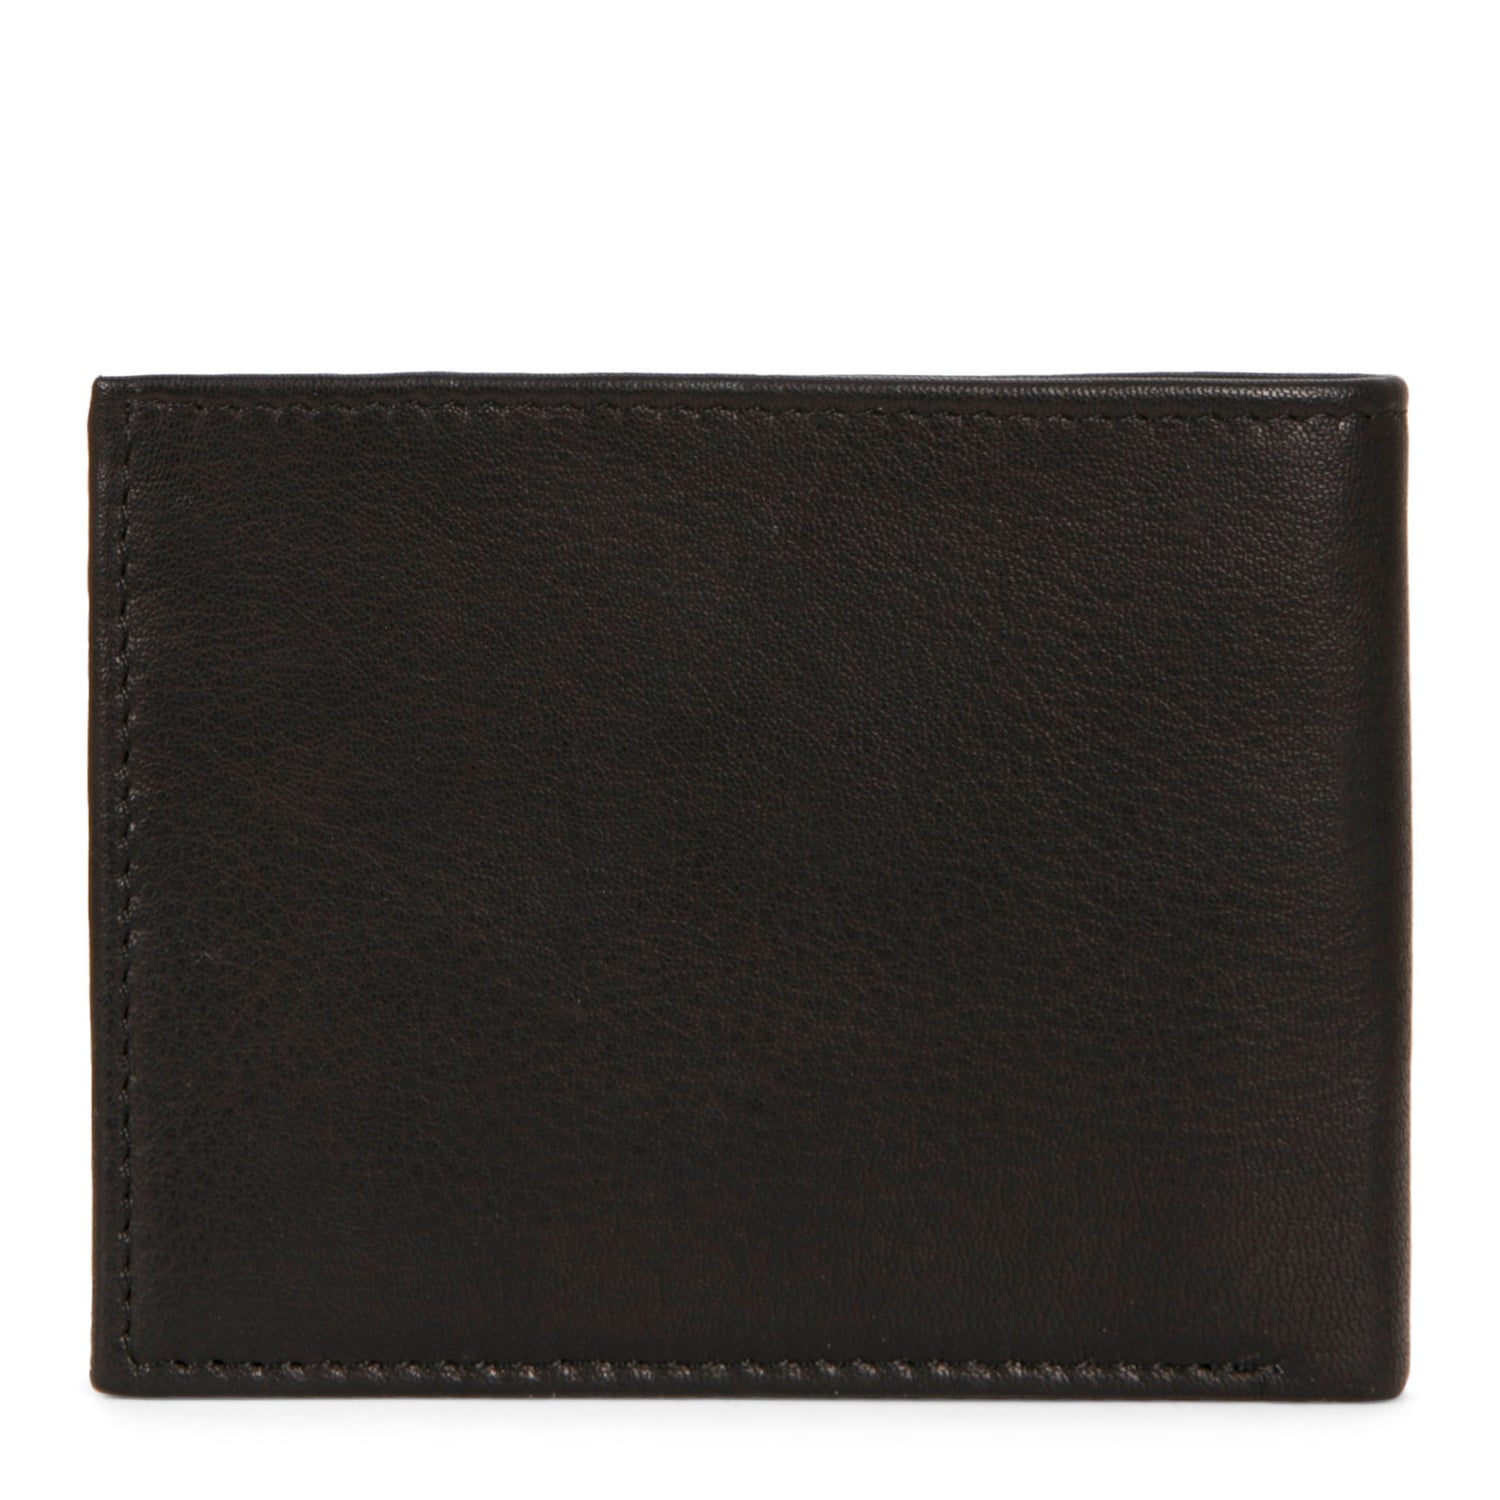 Leather Slim Fold RFID Wallet -  - 

        Pelle
      
